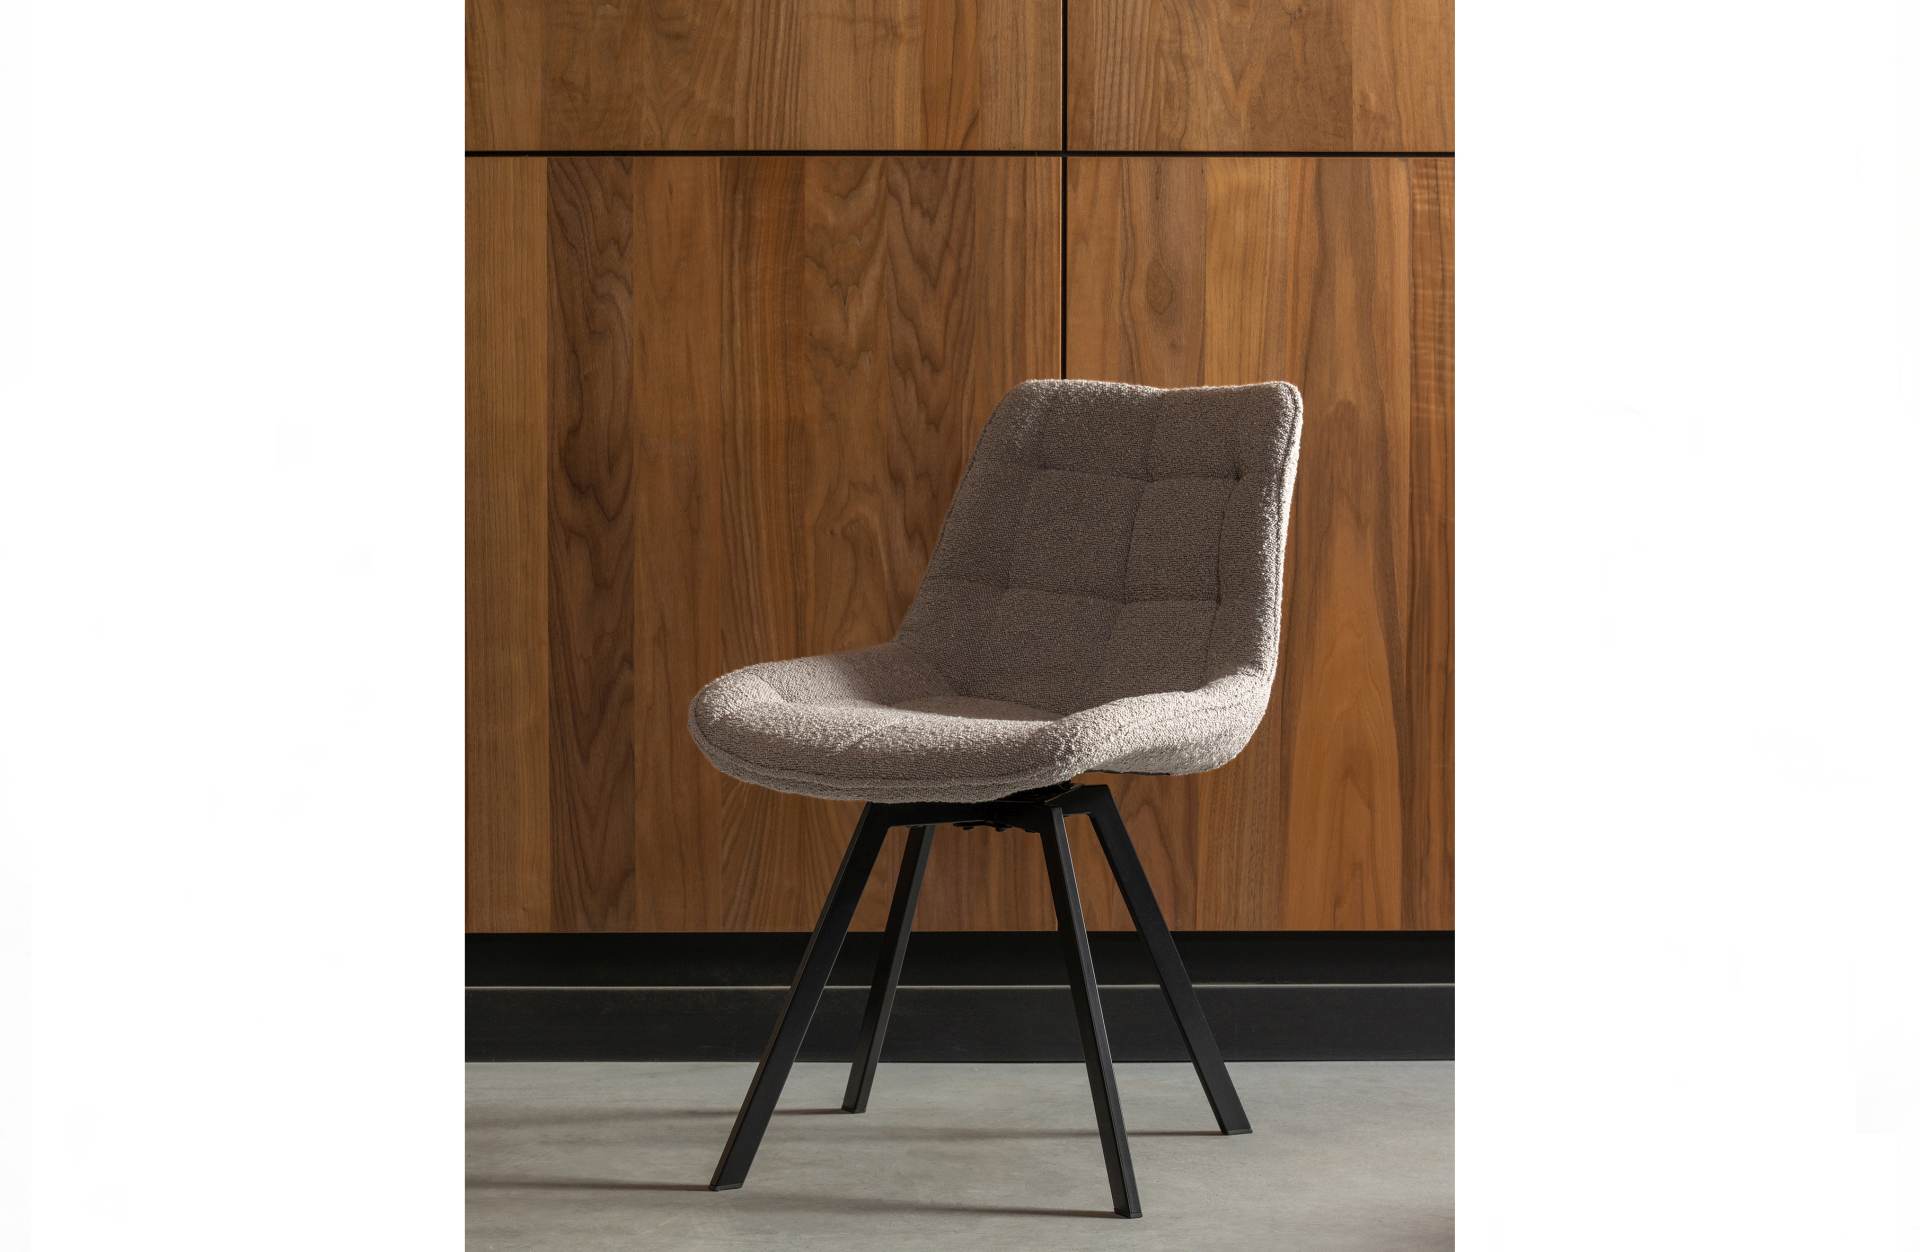 Der Drehstuhl Sutton überzeugt mit seinem klassischen Design. Gefertigt wurde er aus Boucle-Stoff, welcher einen grauen Farbton besitzt. Das Gestell ist aus Metall und hat eine schwarze Farbe. Die Sitzhöhe beträgt 49 cm.